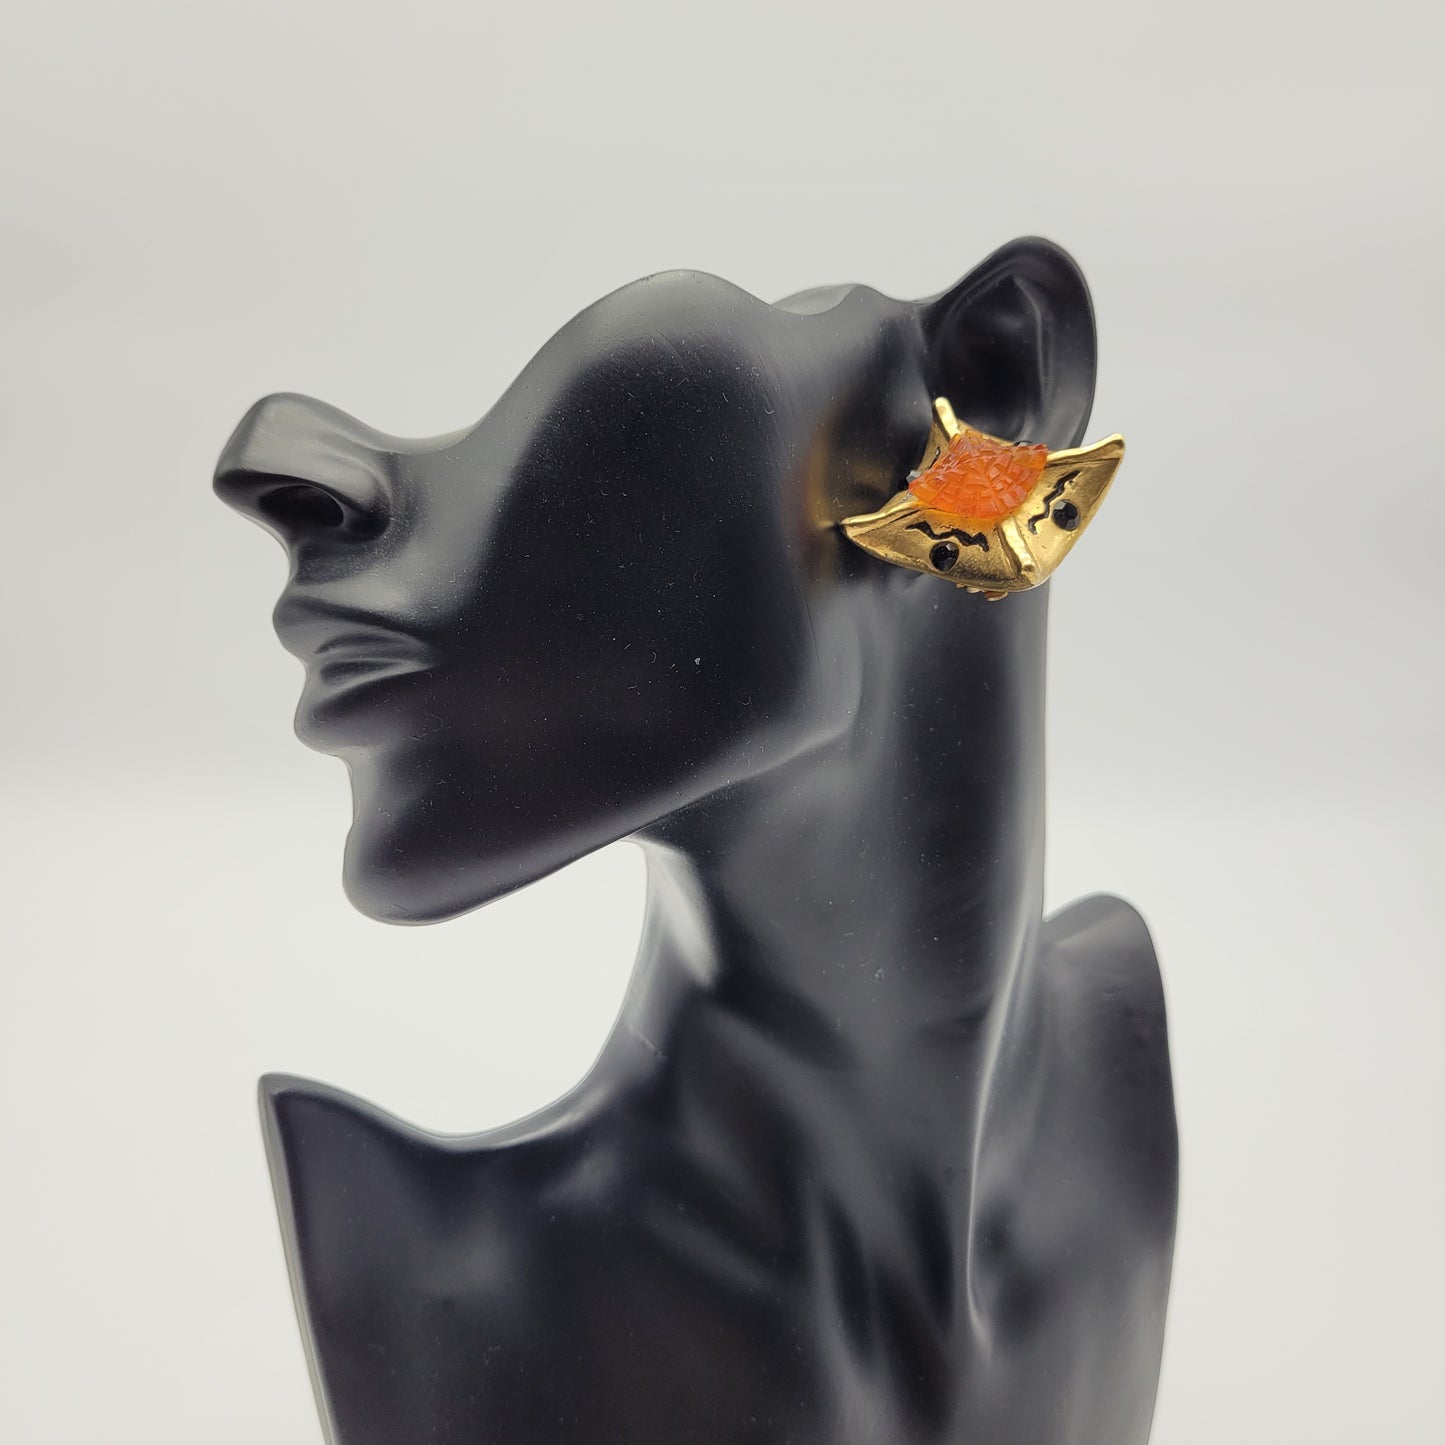 Vintage resin earrings Frederic Volle in orange